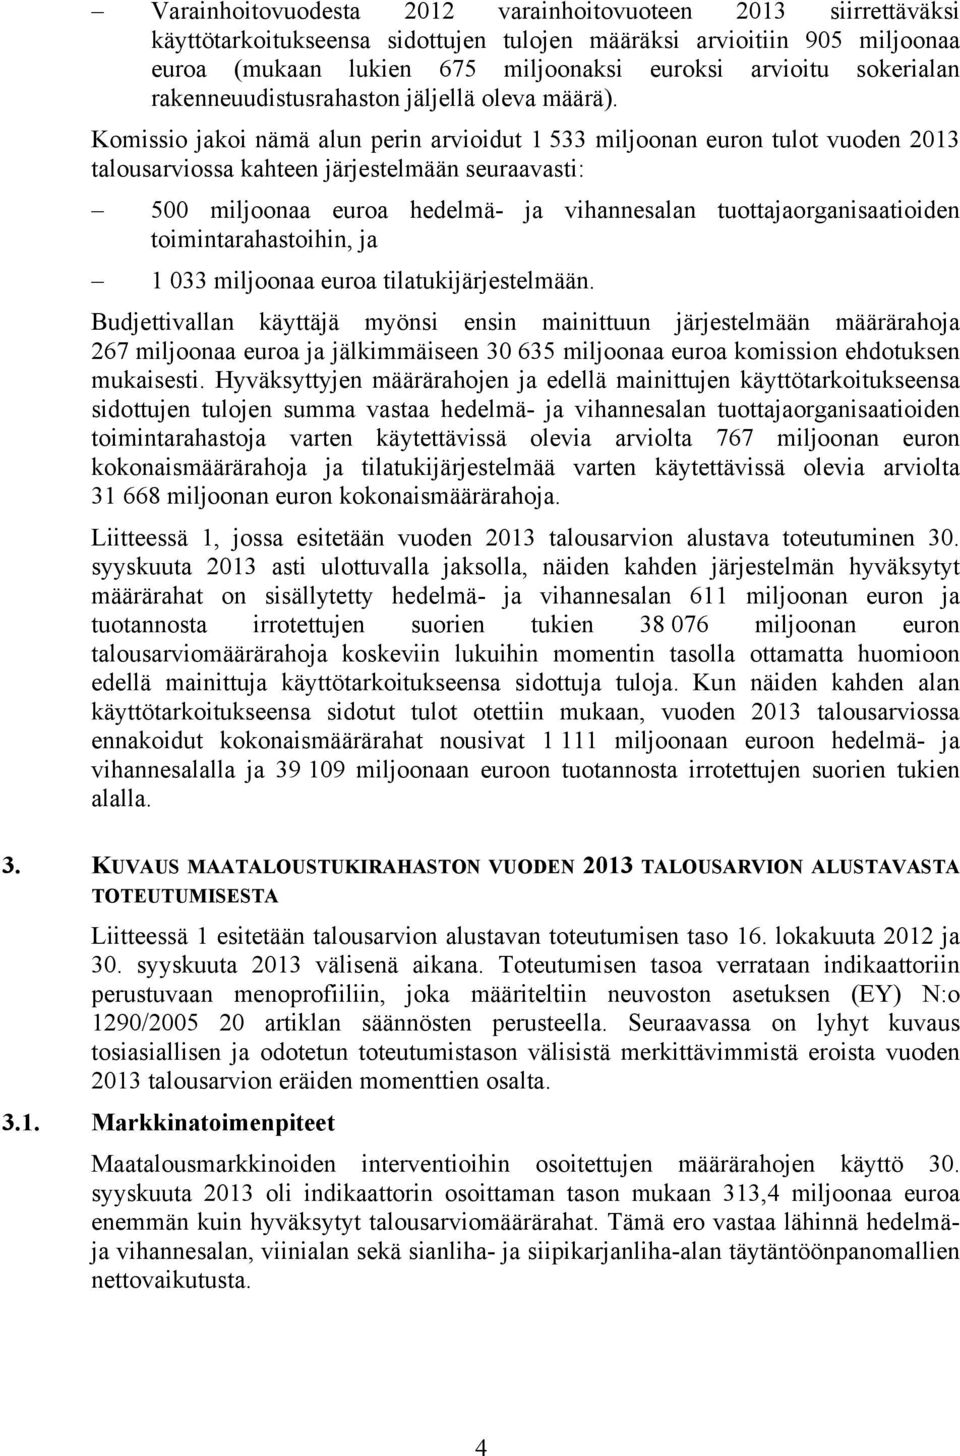 Komissio jakoi nämä alun perin arvioidut 1 533 miljoonan euron tulot vuoden 2013 talousarviossa kahteen järjestelmään seuraavasti: 500 miljoonaa euroa hedelmä- ja vihannesalan